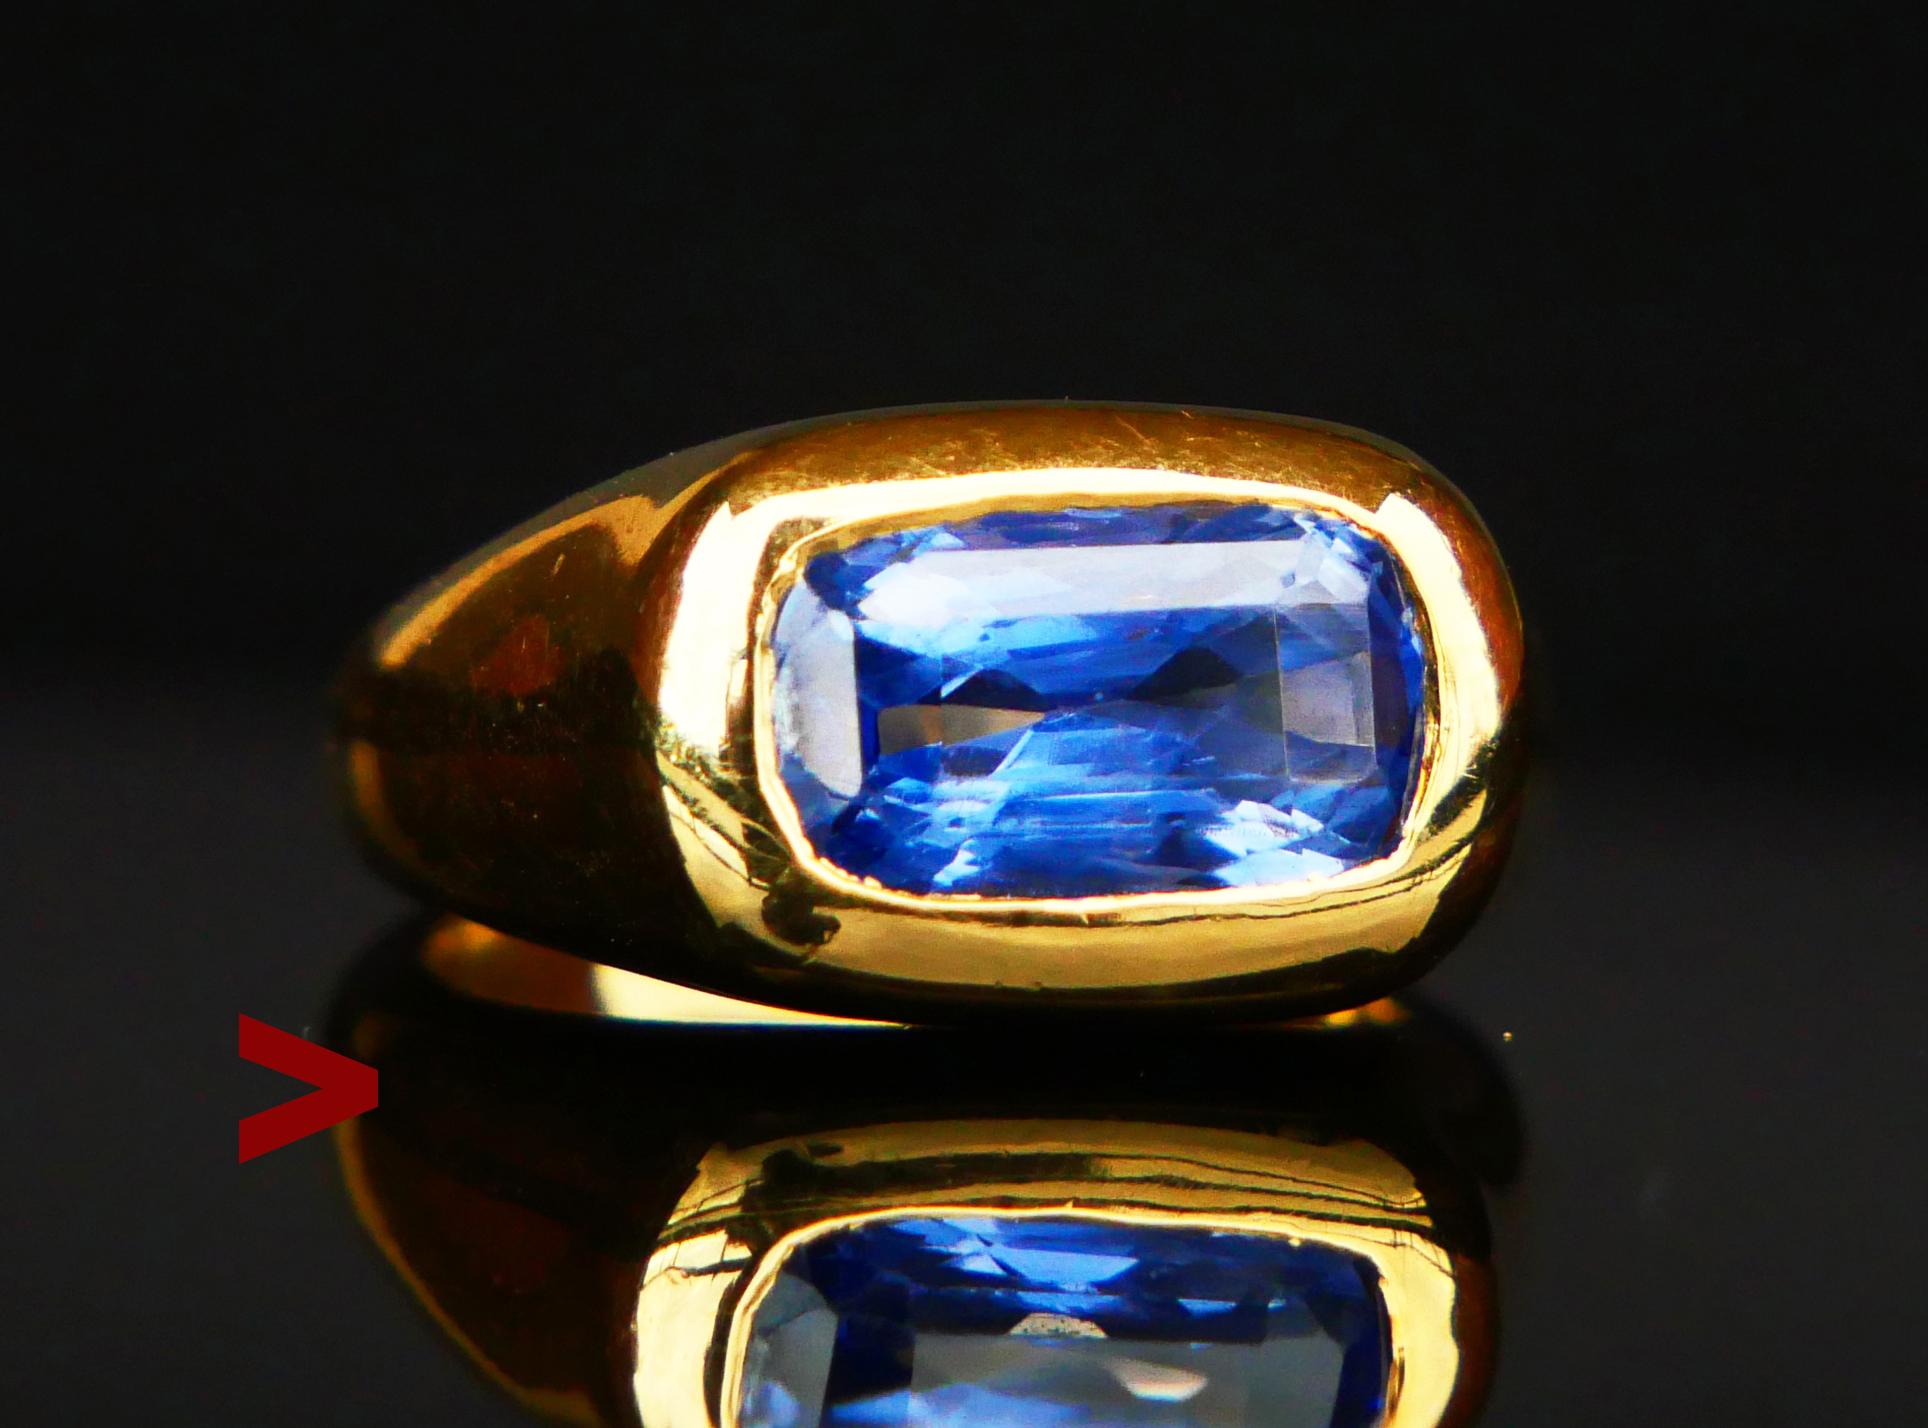 Ring für jeden Tag von Unisex-Typ in massivem 18K Gelbgold mit spektakulären natürlichen blauen Saphir von heller Blau / Cornflower Farbe Vielfalt, Smaragd geschnitten 10mm x 6 mm x 4,6 mm tief /ca 4ct. Der Stein weist die für Naturstein typischen